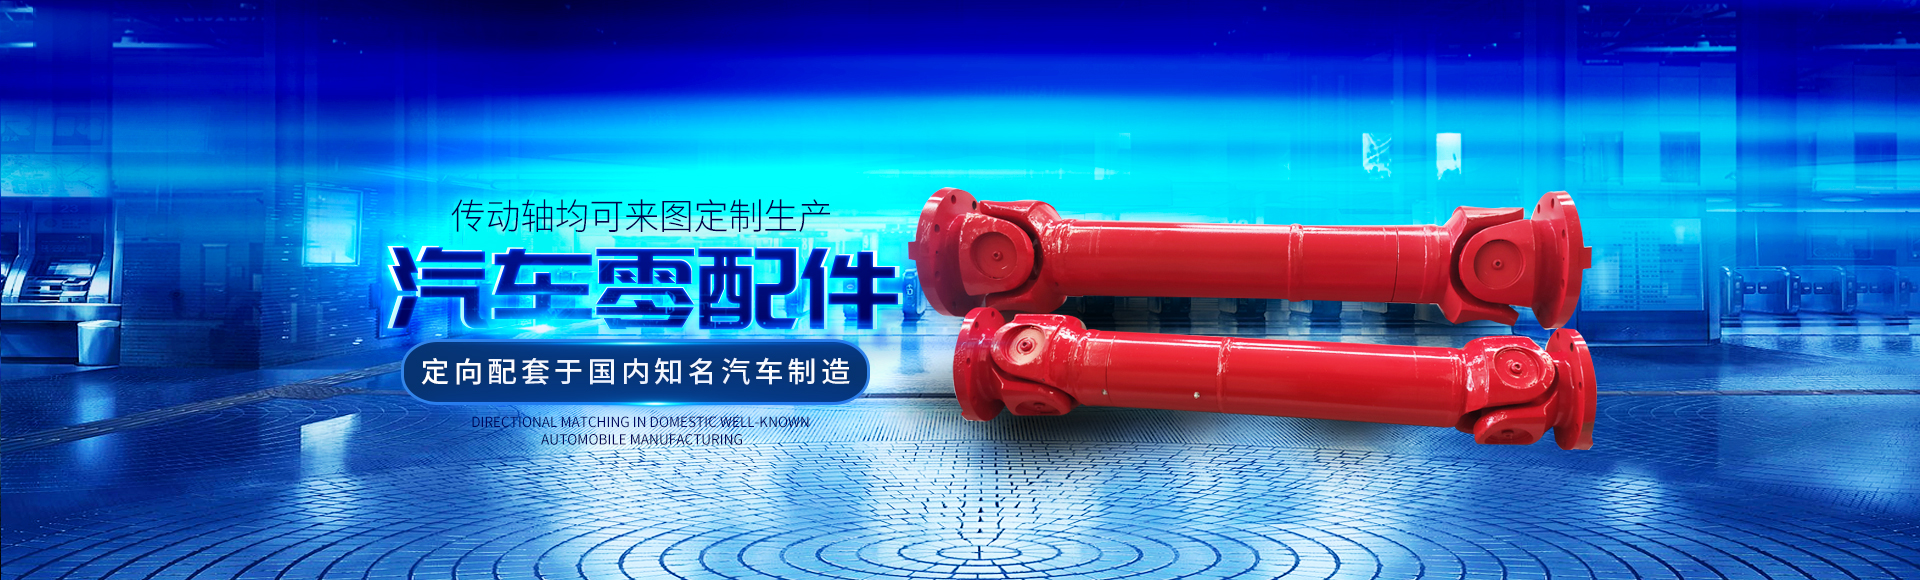 衡阳市祝海机械有限公司_湖南汽车零配件生产销售|湖南传动轴生产销售